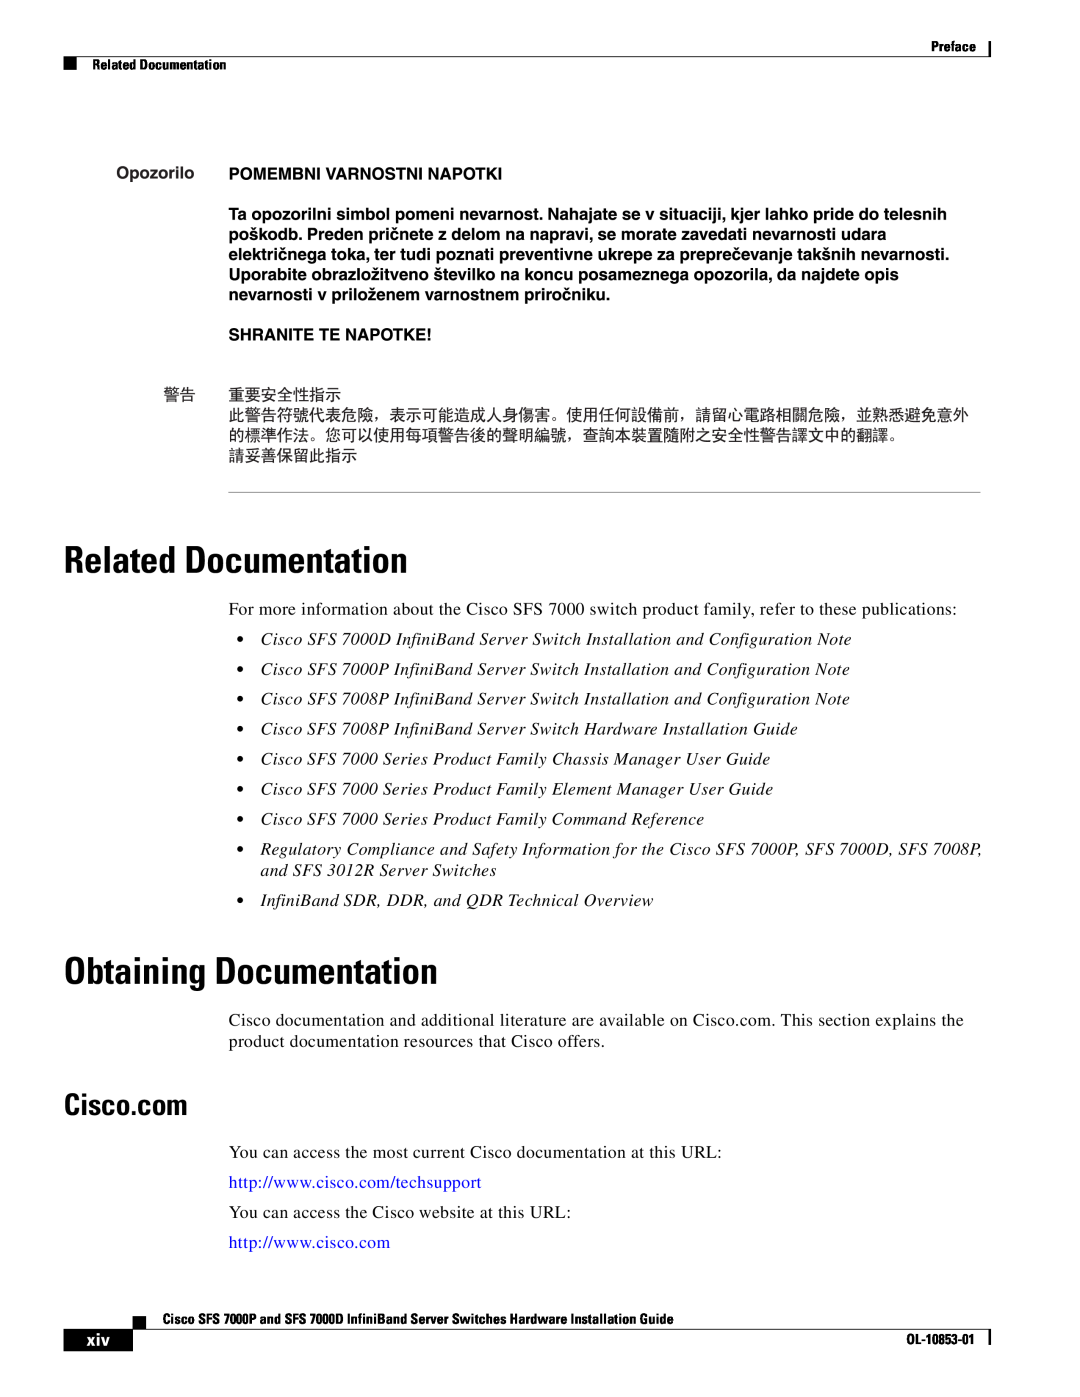 Cisco Systems SFS 7000P, SFS 7000D manual Related Documentation, Obtaining Documentation, Cisco.com 